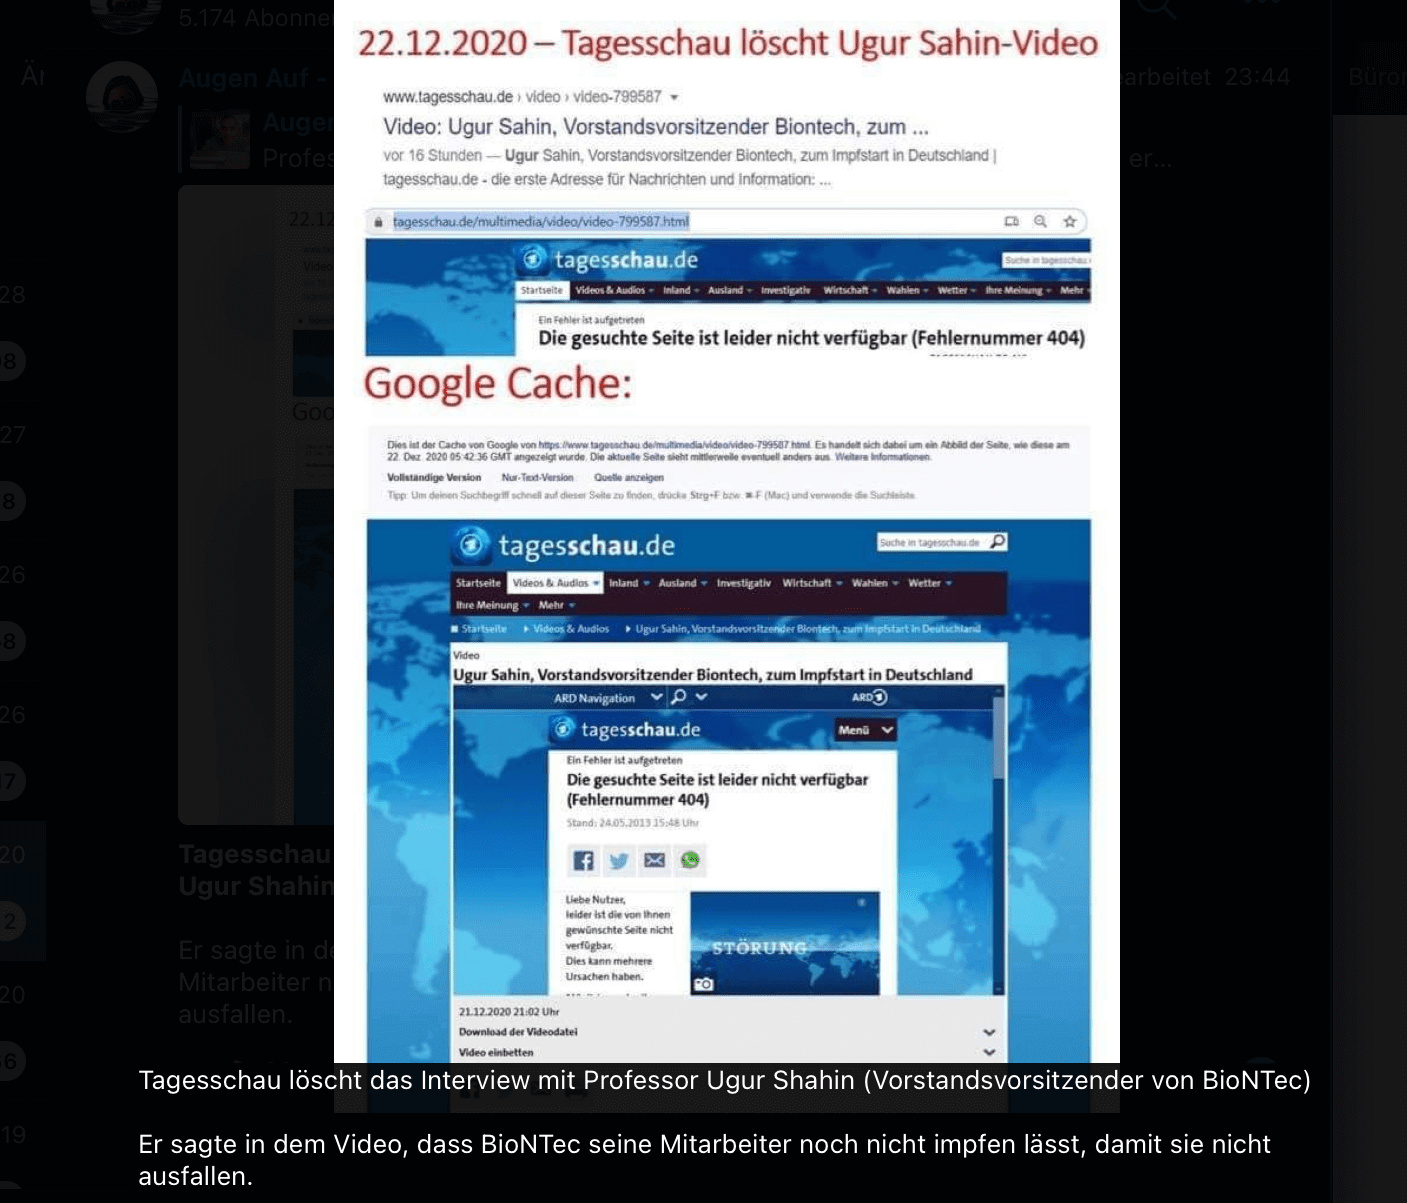 Eine in Sozialen Netzwerken verbreitete Bildcollage zeigt die Internetseite der Tagesschau und suggeriert, ein Interview mit Uğur Şahin sei gelöscht worden. 